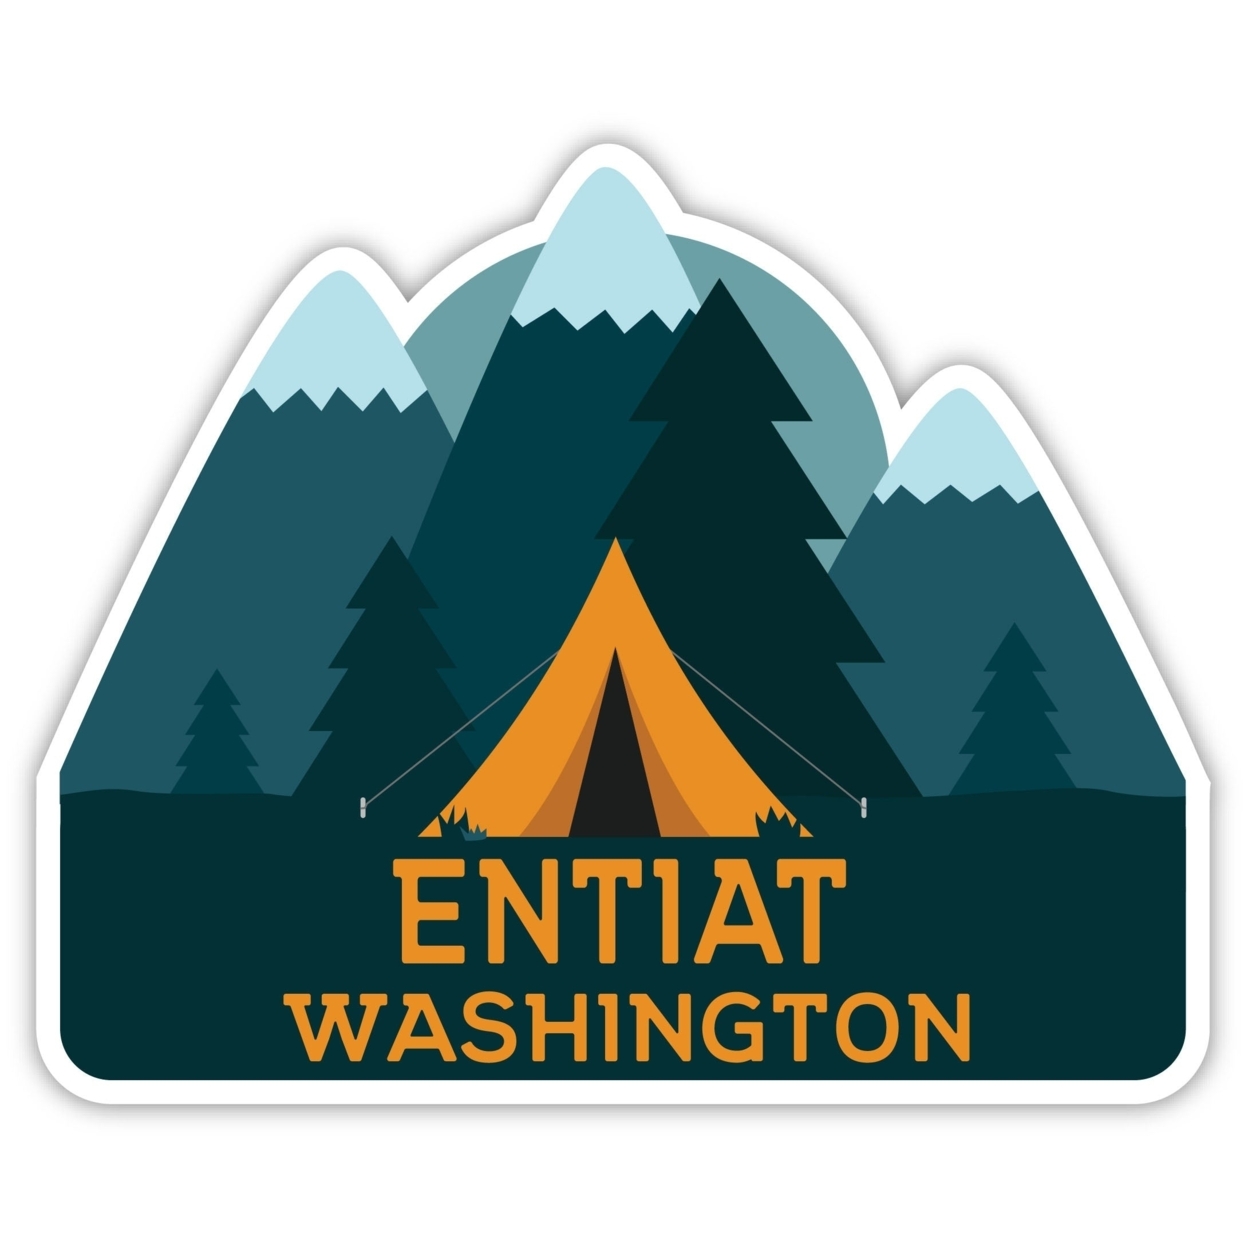 Entiat Washington Souvenir Decorative Stickers (Choose Theme And Size) - Single Unit, 8-Inch, Tent